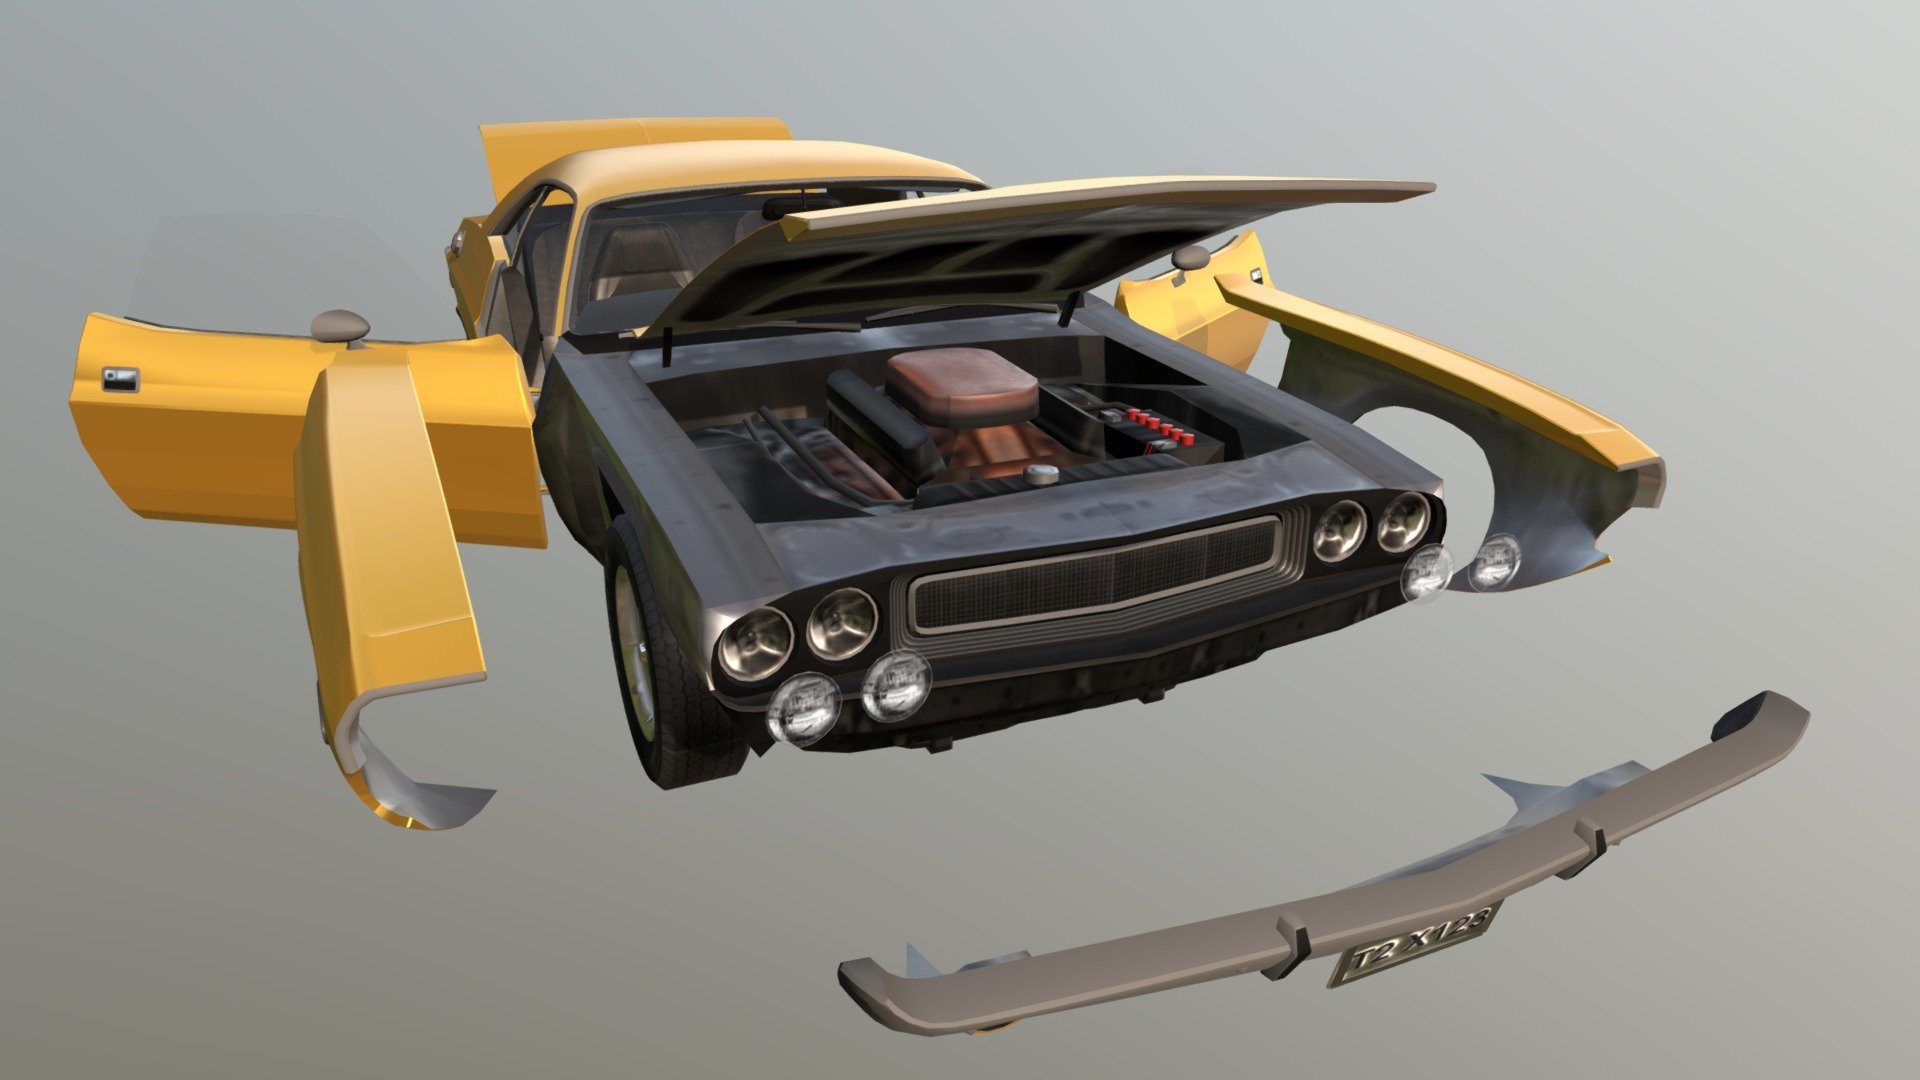 Real Car 11 Separated Parts - 3D model by Maker Games Studios (@MakerGamesStudios) 3d model